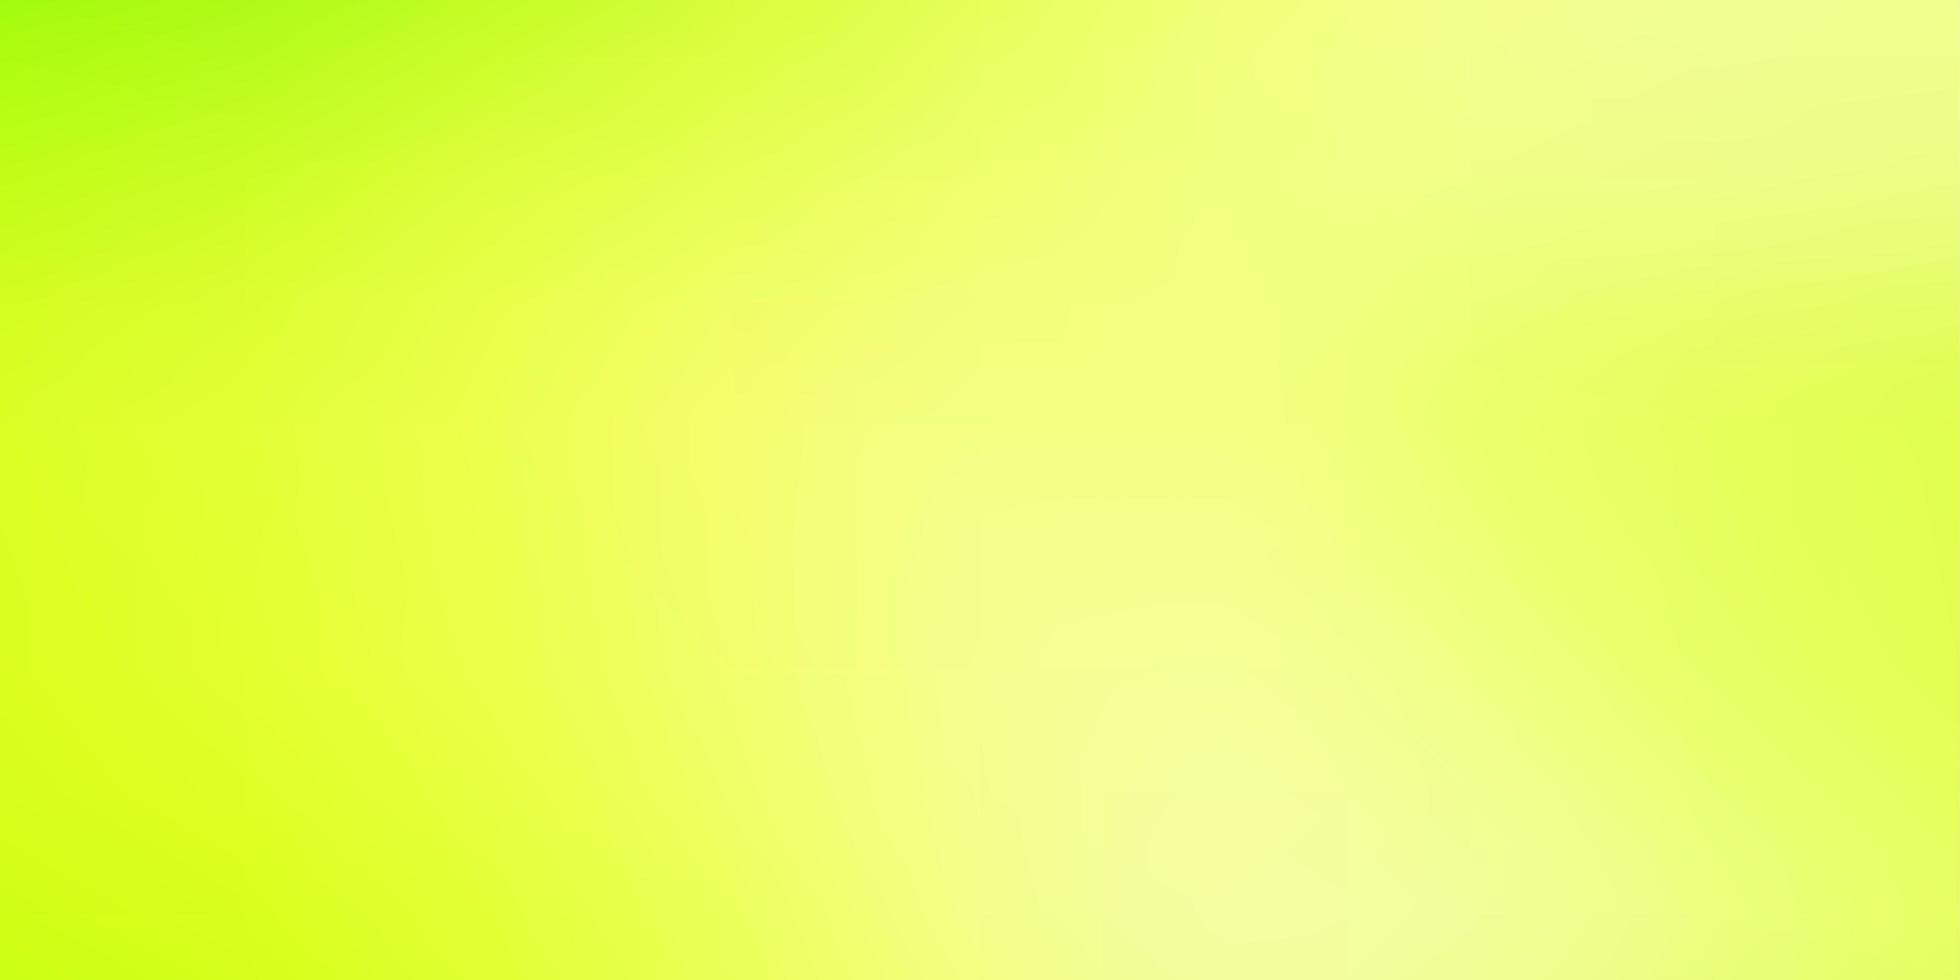 ljusgrön, gul vektor färgglad oskärpa bakgrund.